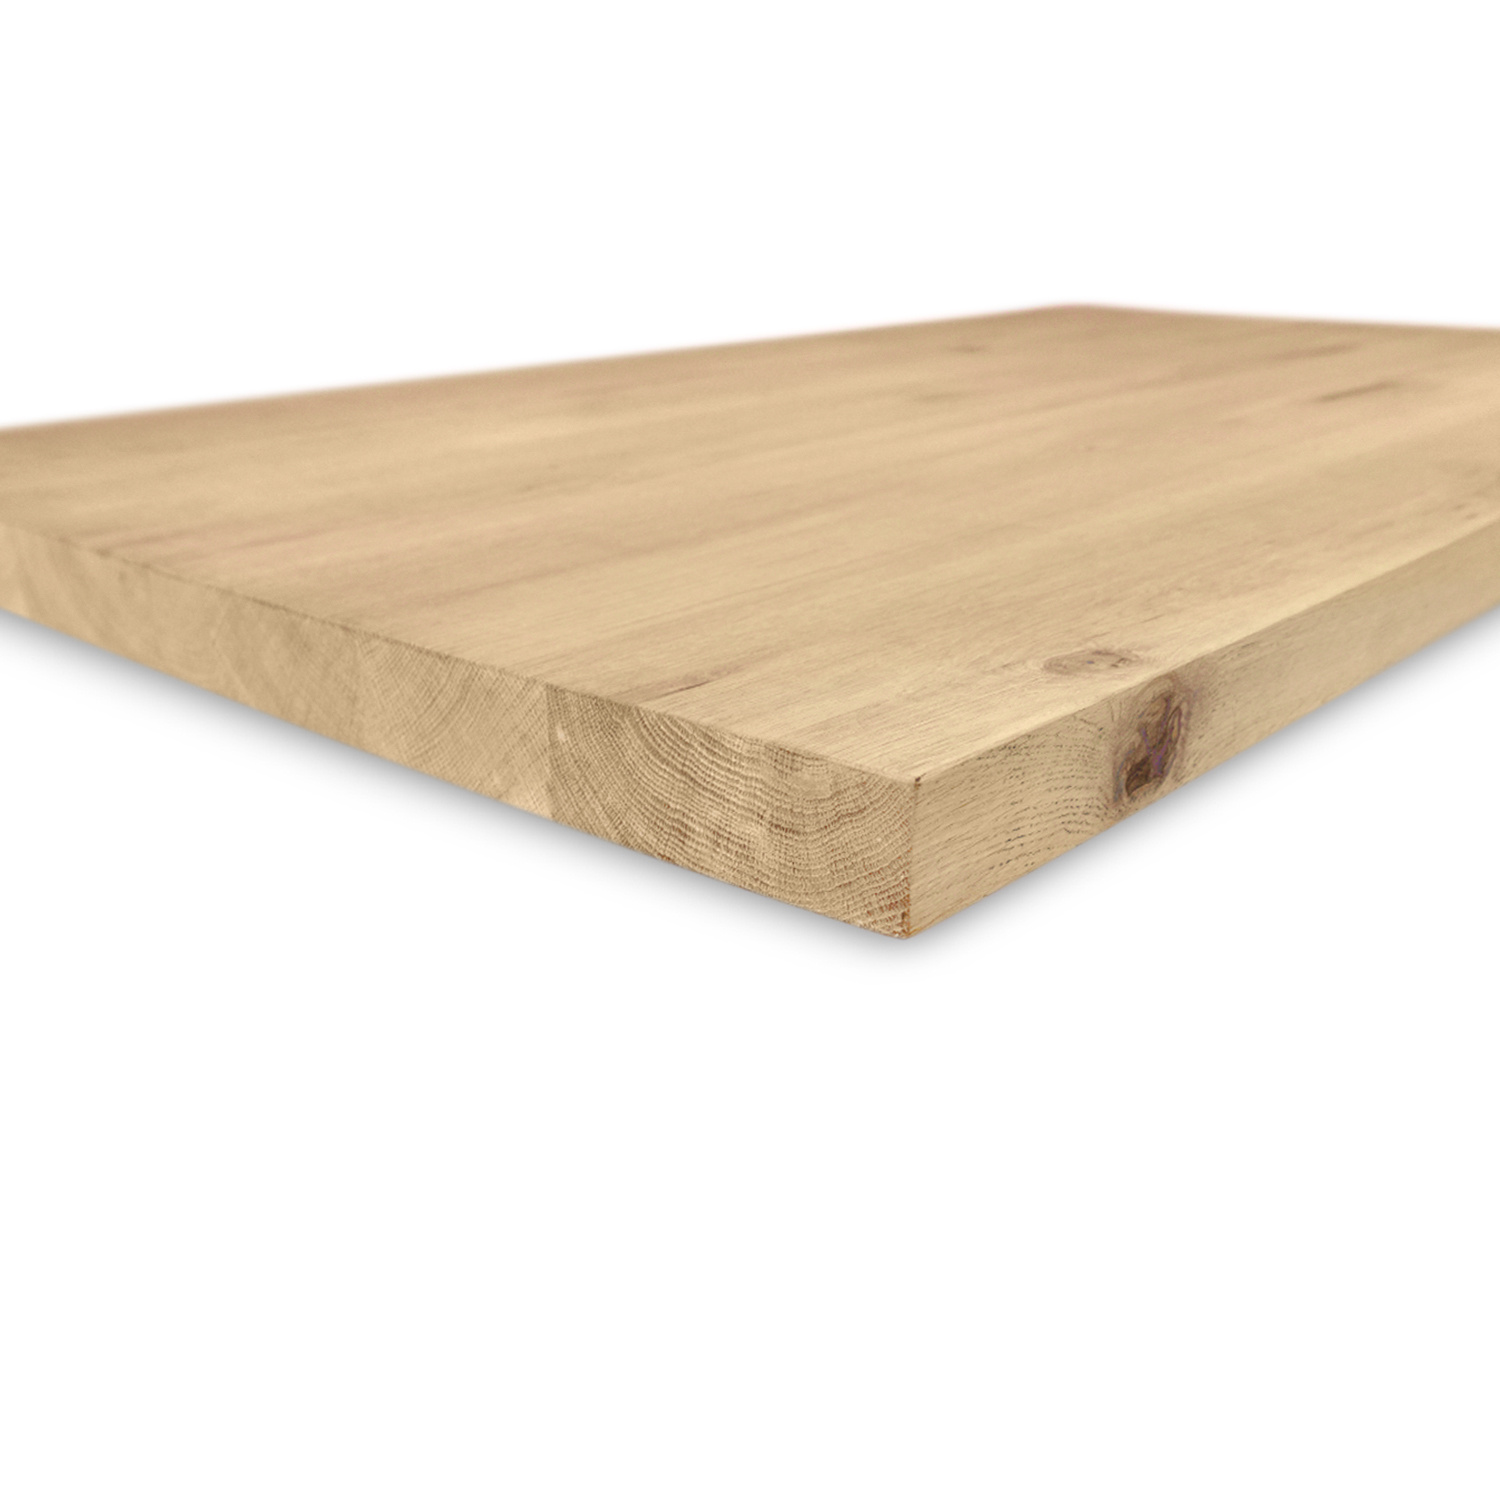  Tischplatte Wildeiche - 2,5 cm dick (1-Schicht) - XXL Lamellen (14-20 cm breit) - Asteiche (rustikal) - verleimt & künstlich getrocknet (HF 8-12%) - verschiedene Größen